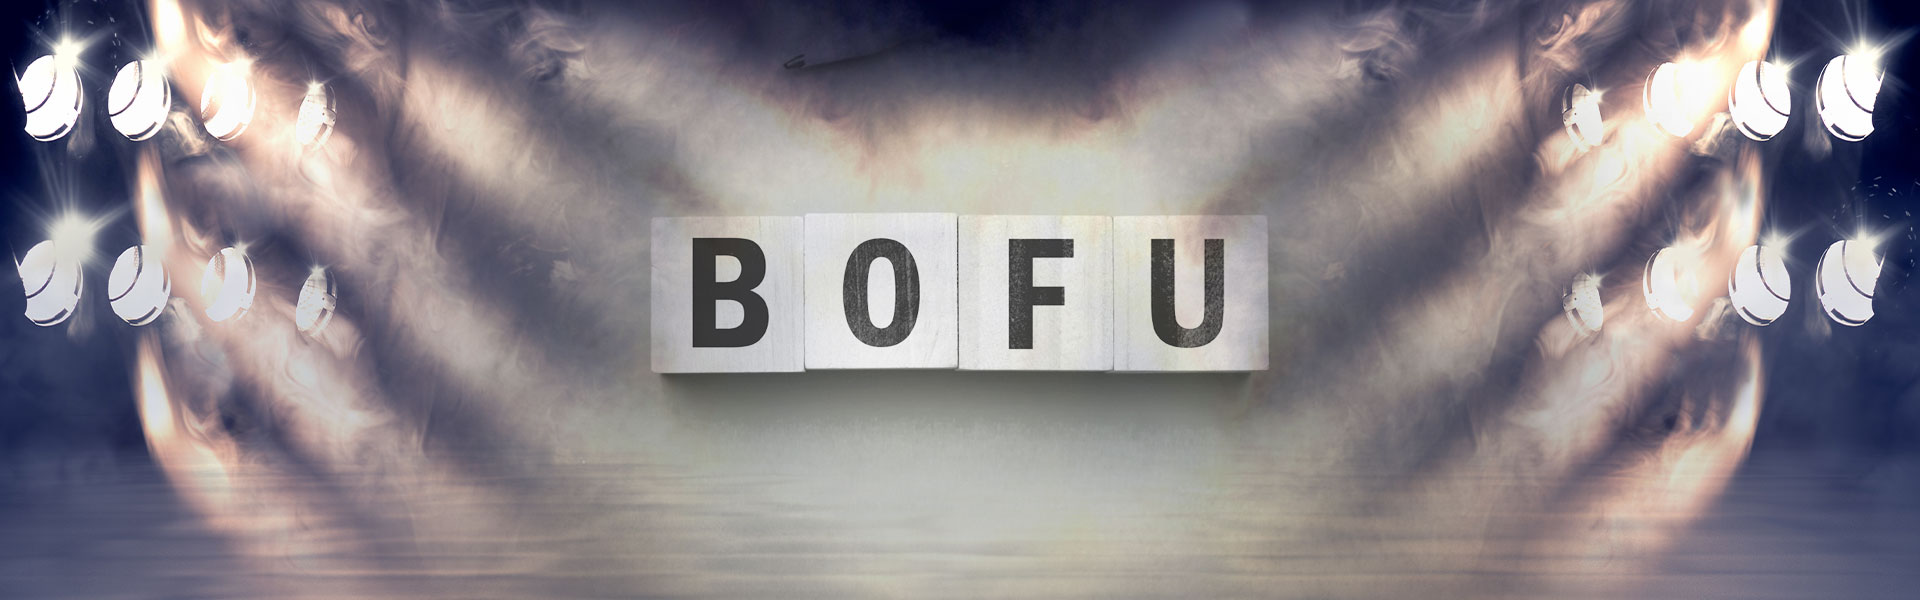 MBmedien Blogartikel-Header: BoFu-Marketing